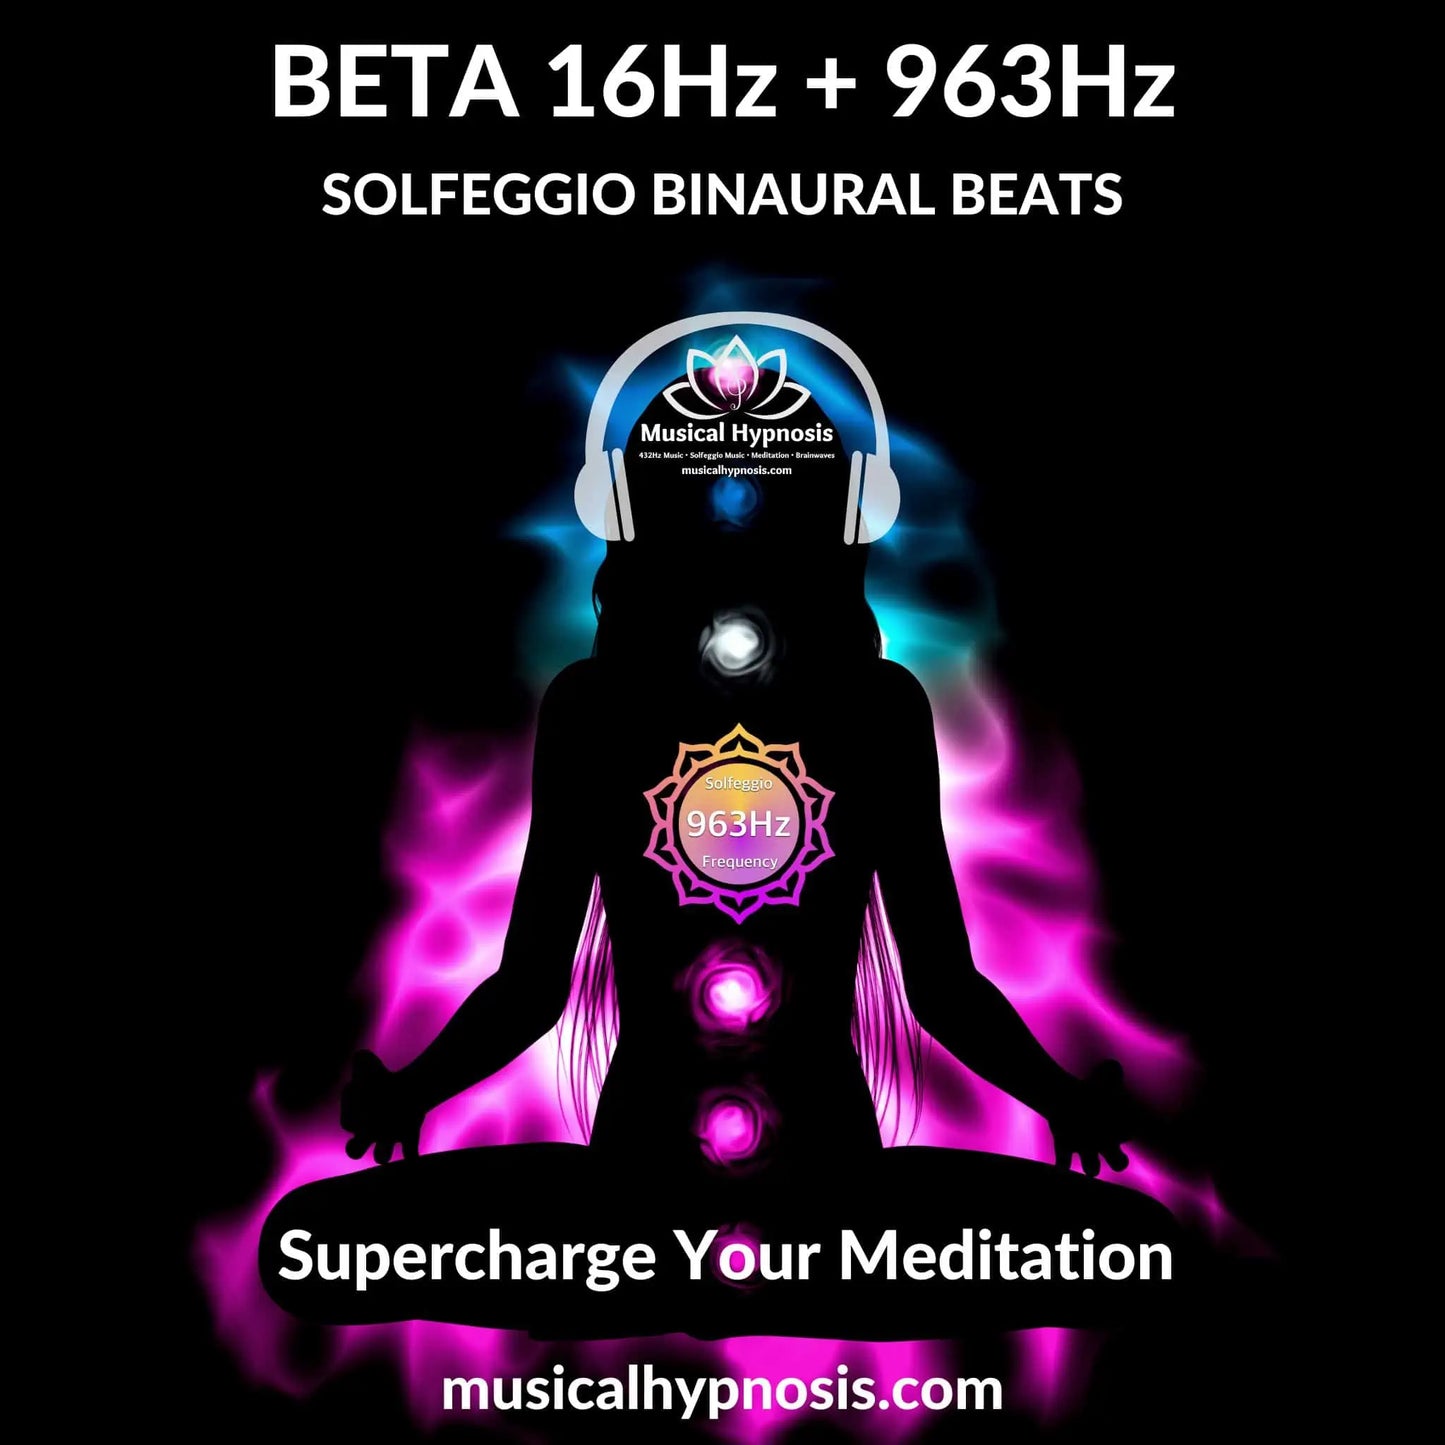 Beta 16Hz and 963Hz Solfeggio Binaural Beats | 30 minutes